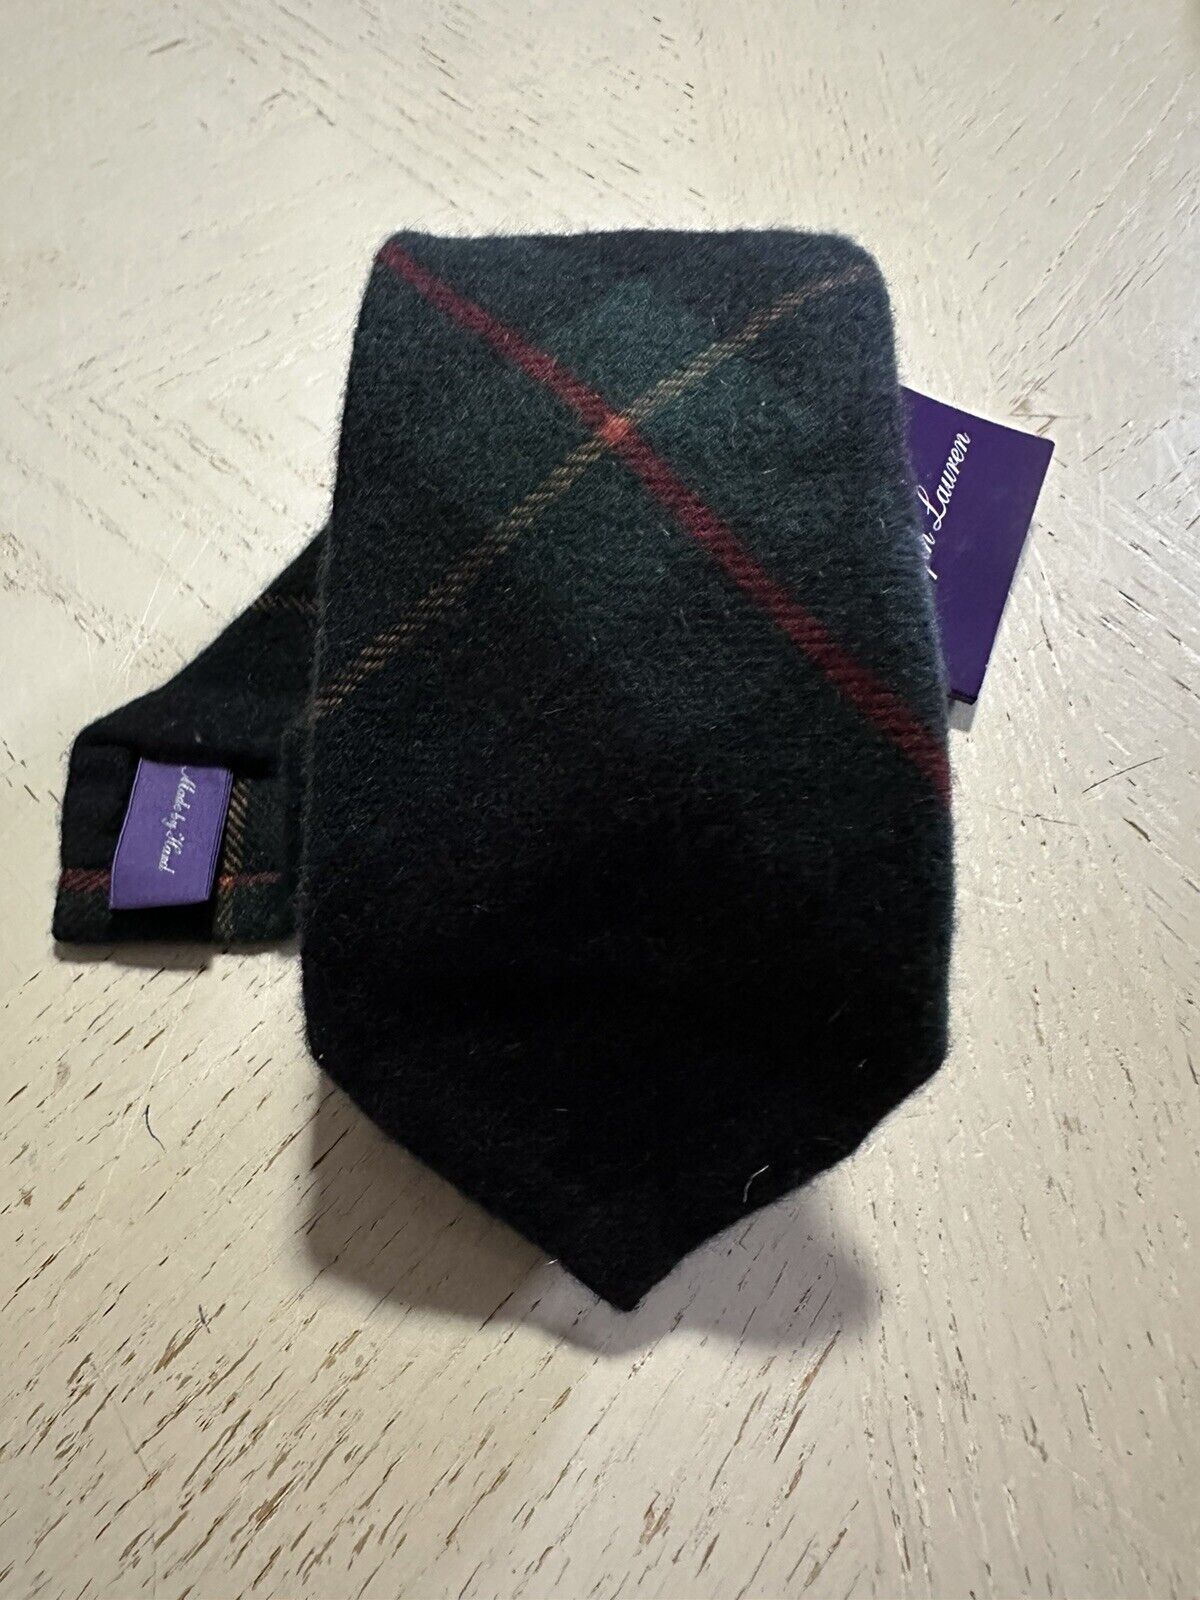 Новый кашемировый галстук Gr/Y/R Ralph Lauren Purple Label стоимостью 265 долларов, сделанный вручную в Италии